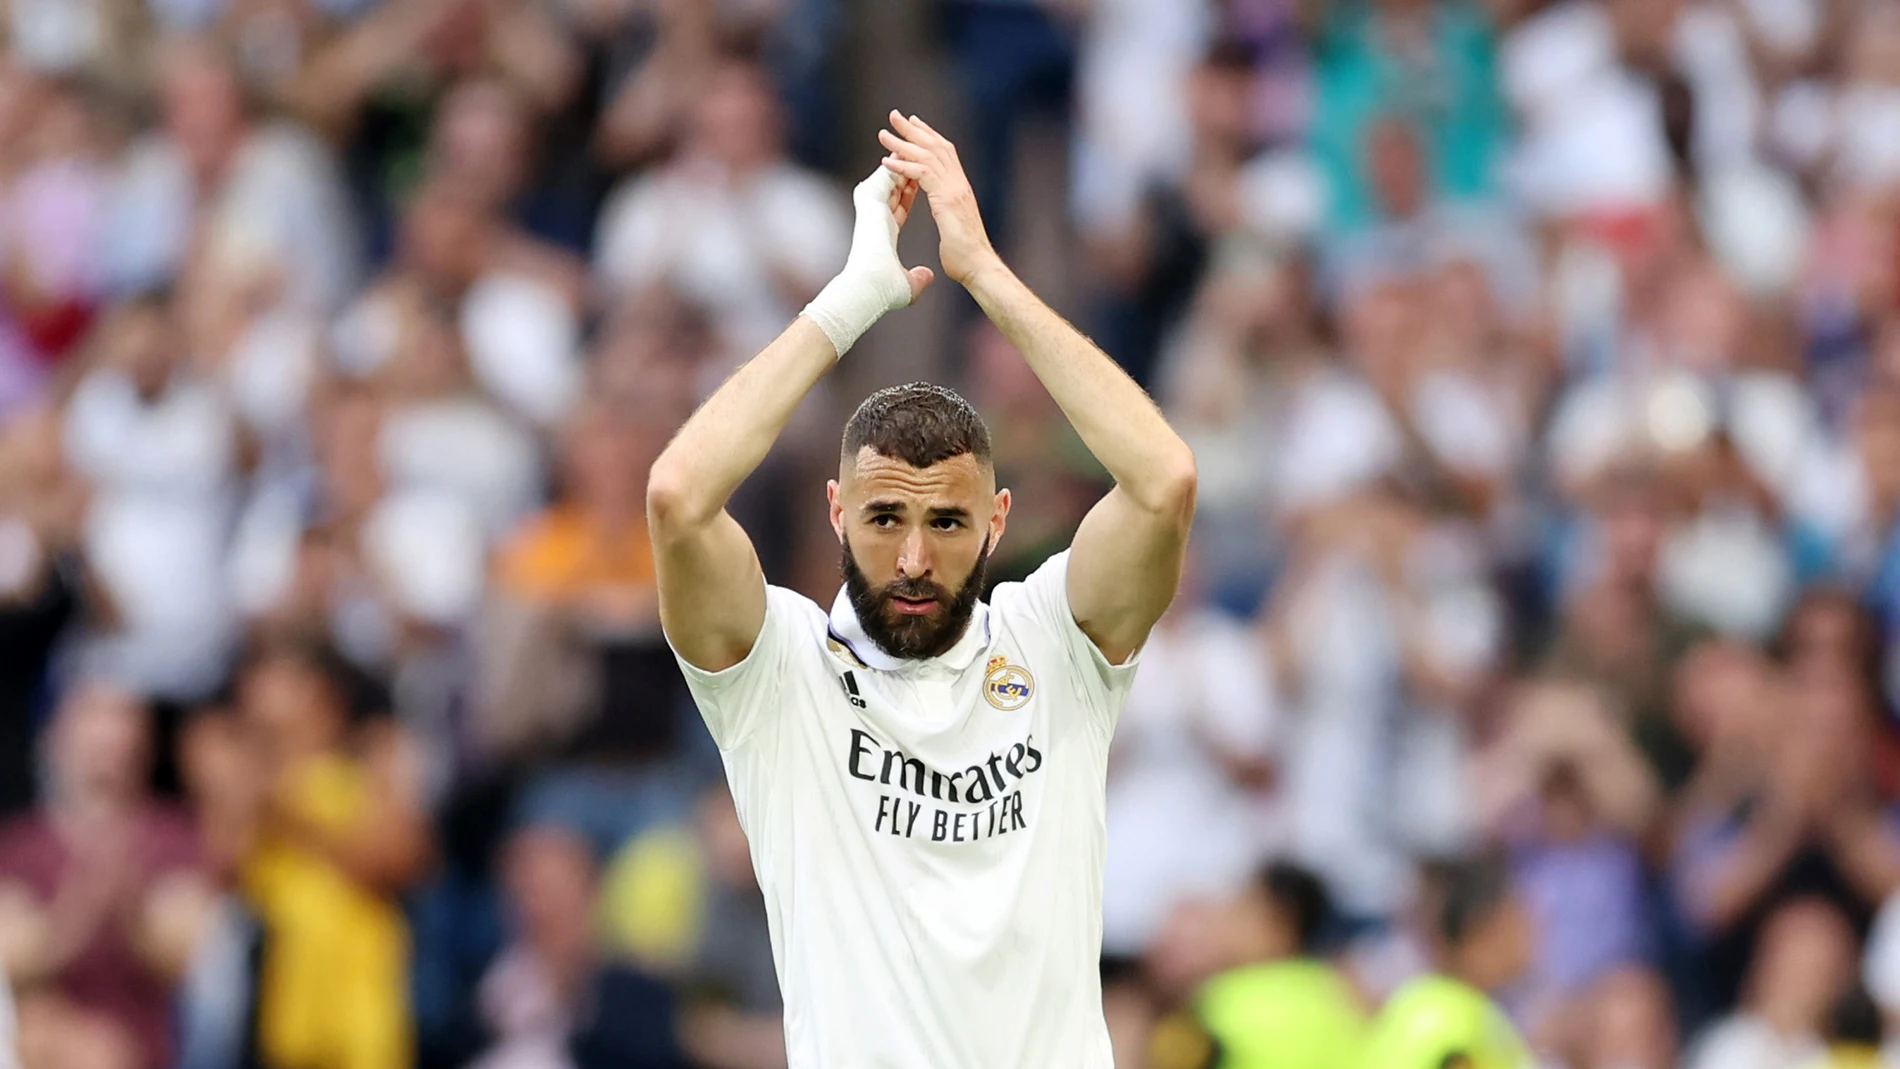 El último aplauso del Bernabéu a Karim Benzema